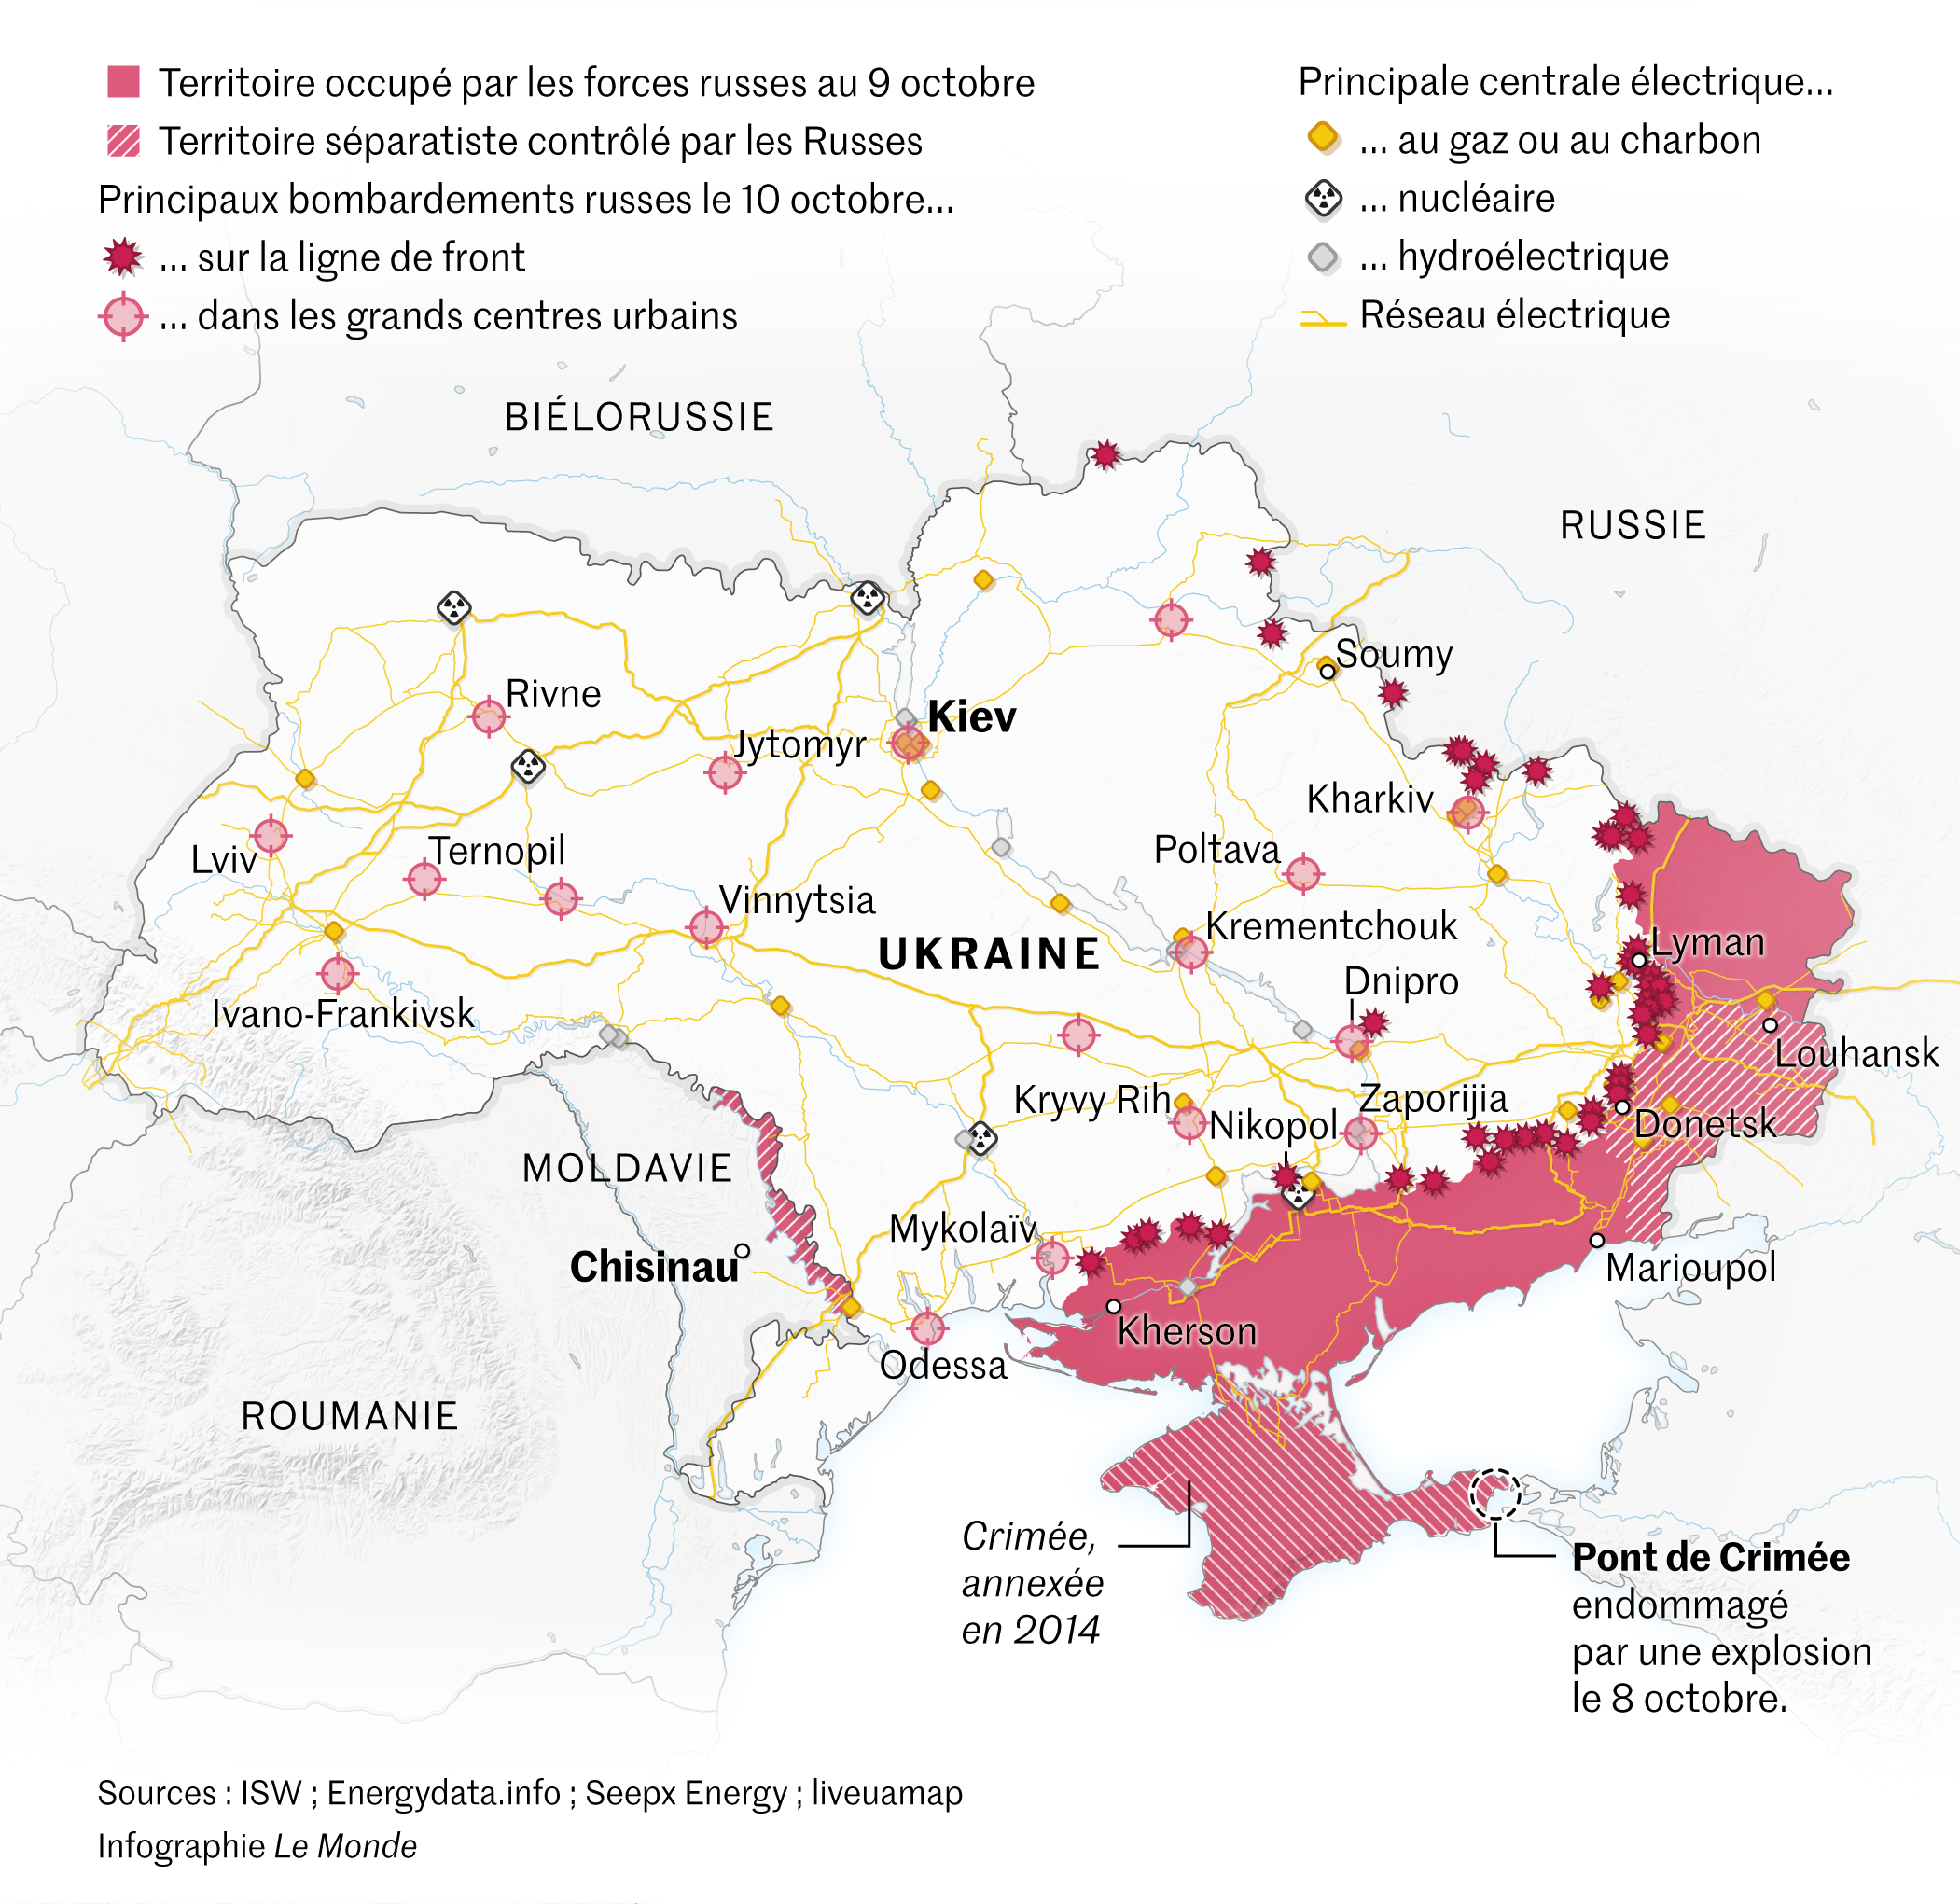 Les cartes de la guerre en Ukraine, depuis l’invasion russe de février 2022